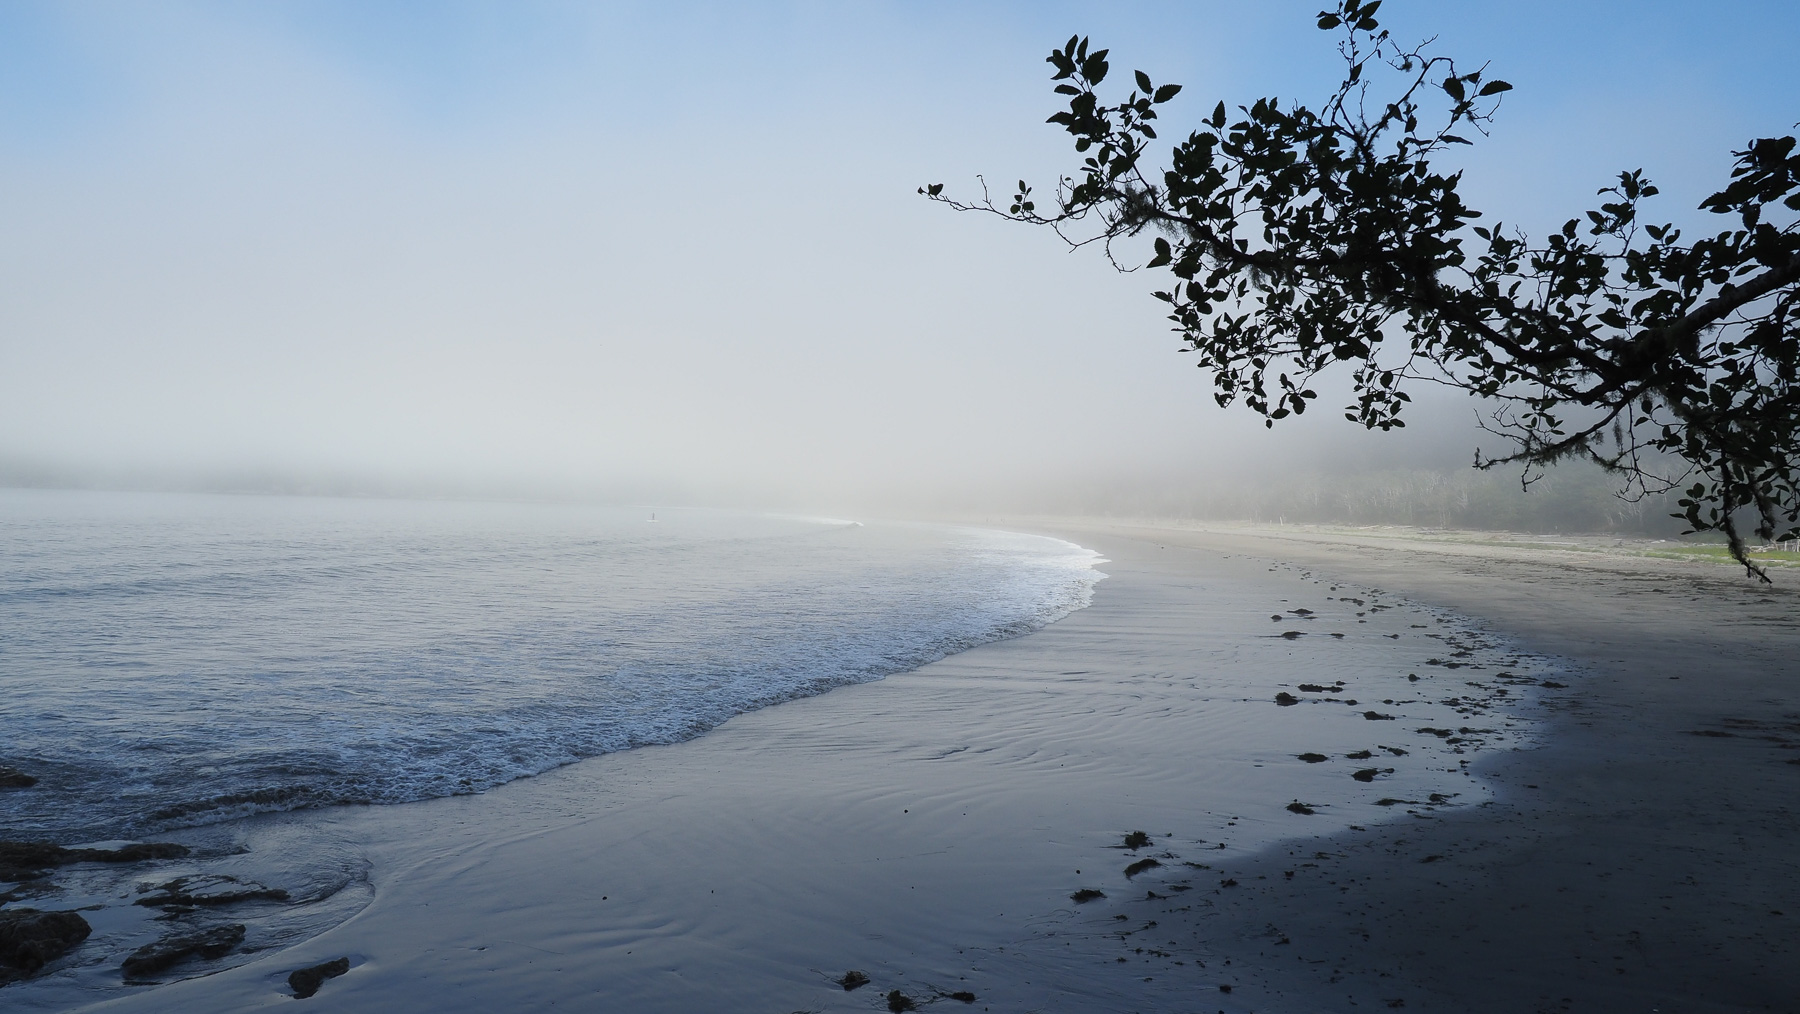 schöne Pazifikstrände, nur meistens im Nebel, das Wasser eiskalt